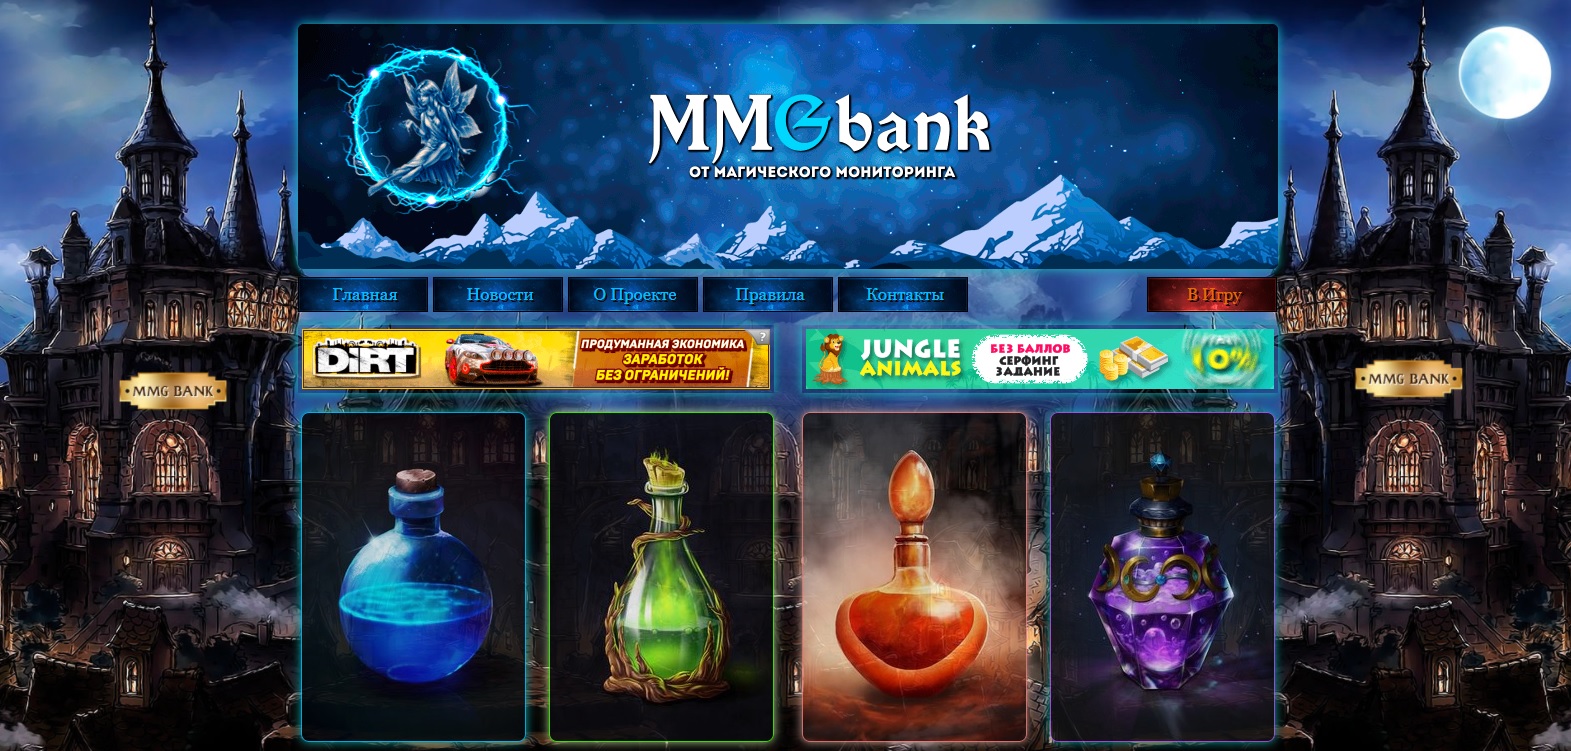 Mmgame-bank